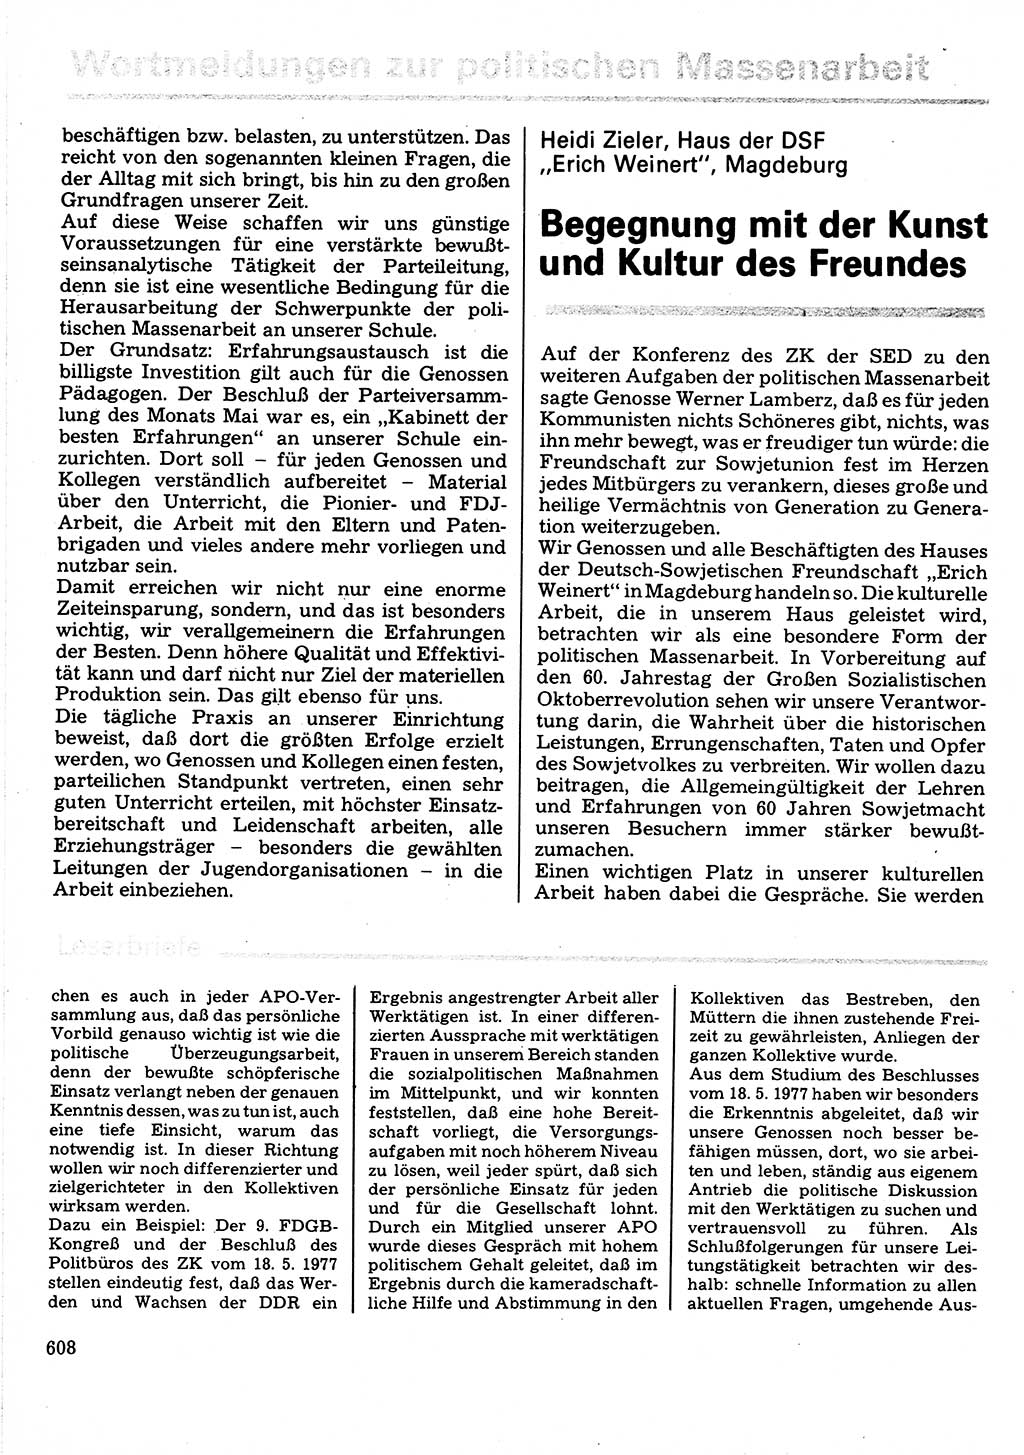 Neuer Weg (NW), Organ des Zentralkomitees (ZK) der SED (Sozialistische Einheitspartei Deutschlands) für Fragen des Parteilebens, 32. Jahrgang [Deutsche Demokratische Republik (DDR)] 1977, Seite 608 (NW ZK SED DDR 1977, S. 608)